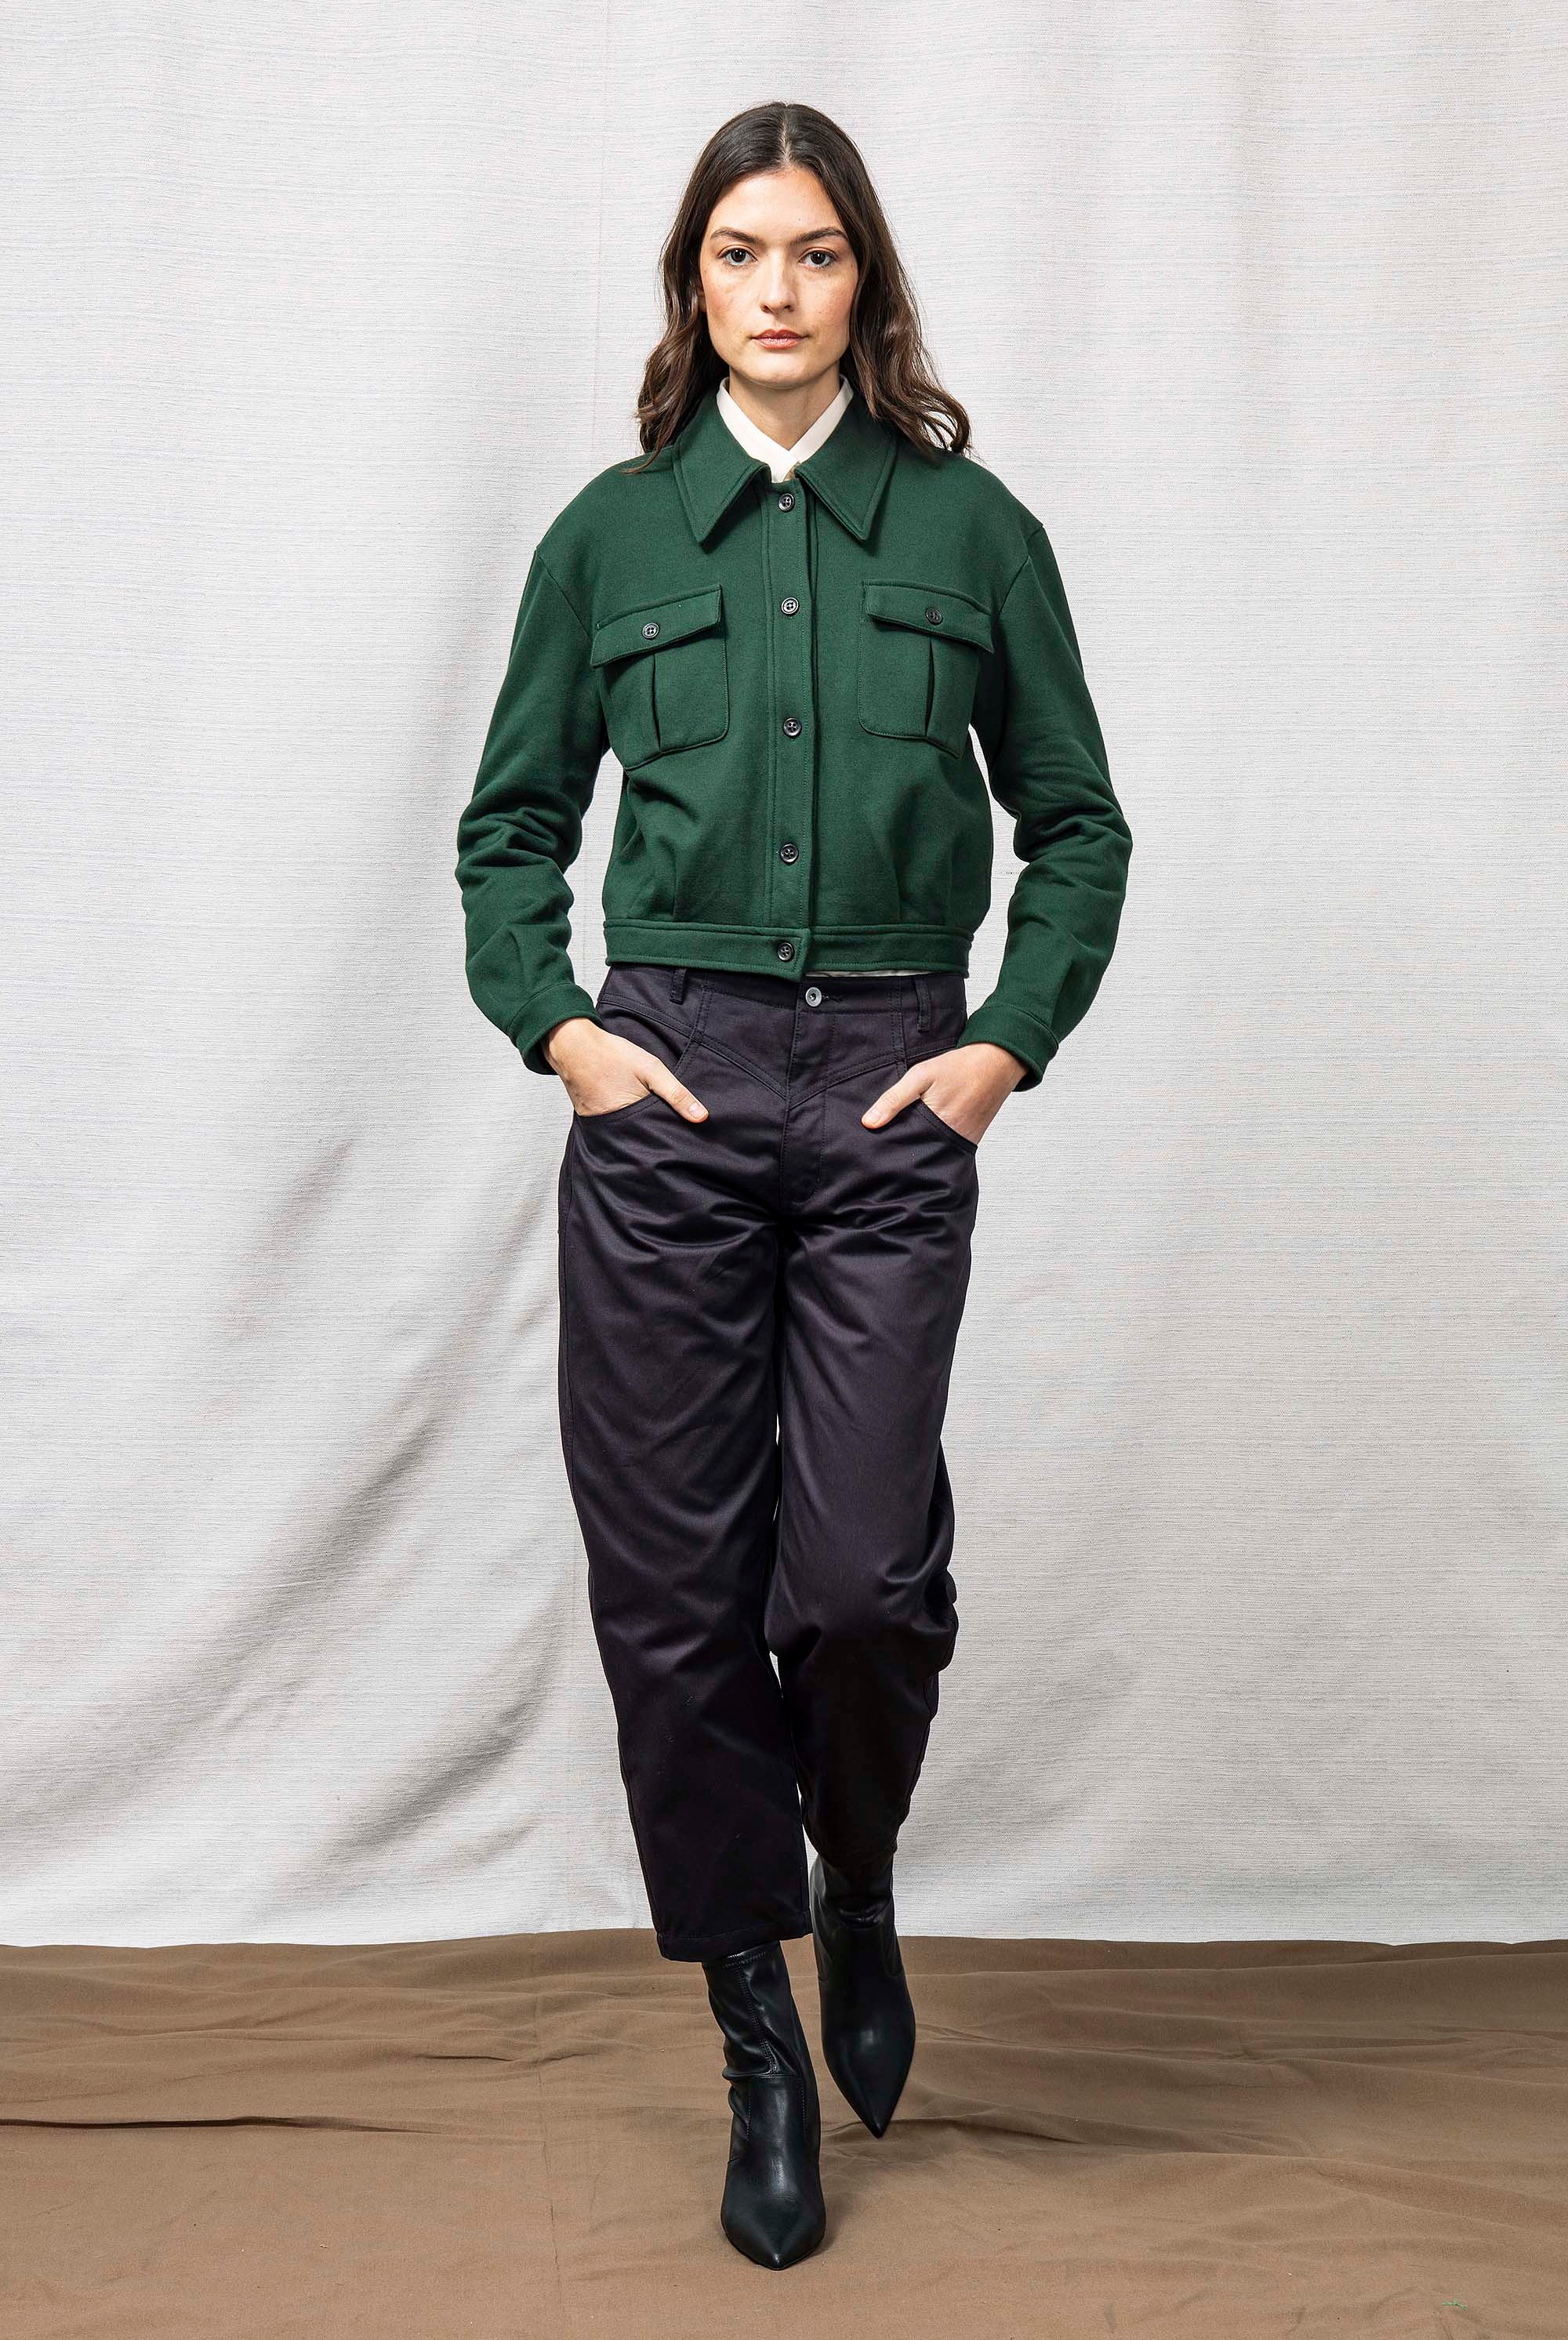 Veste Dione Vert Foncé sweatshirt femme, pièce basique et vêtement cocooning du quotidien